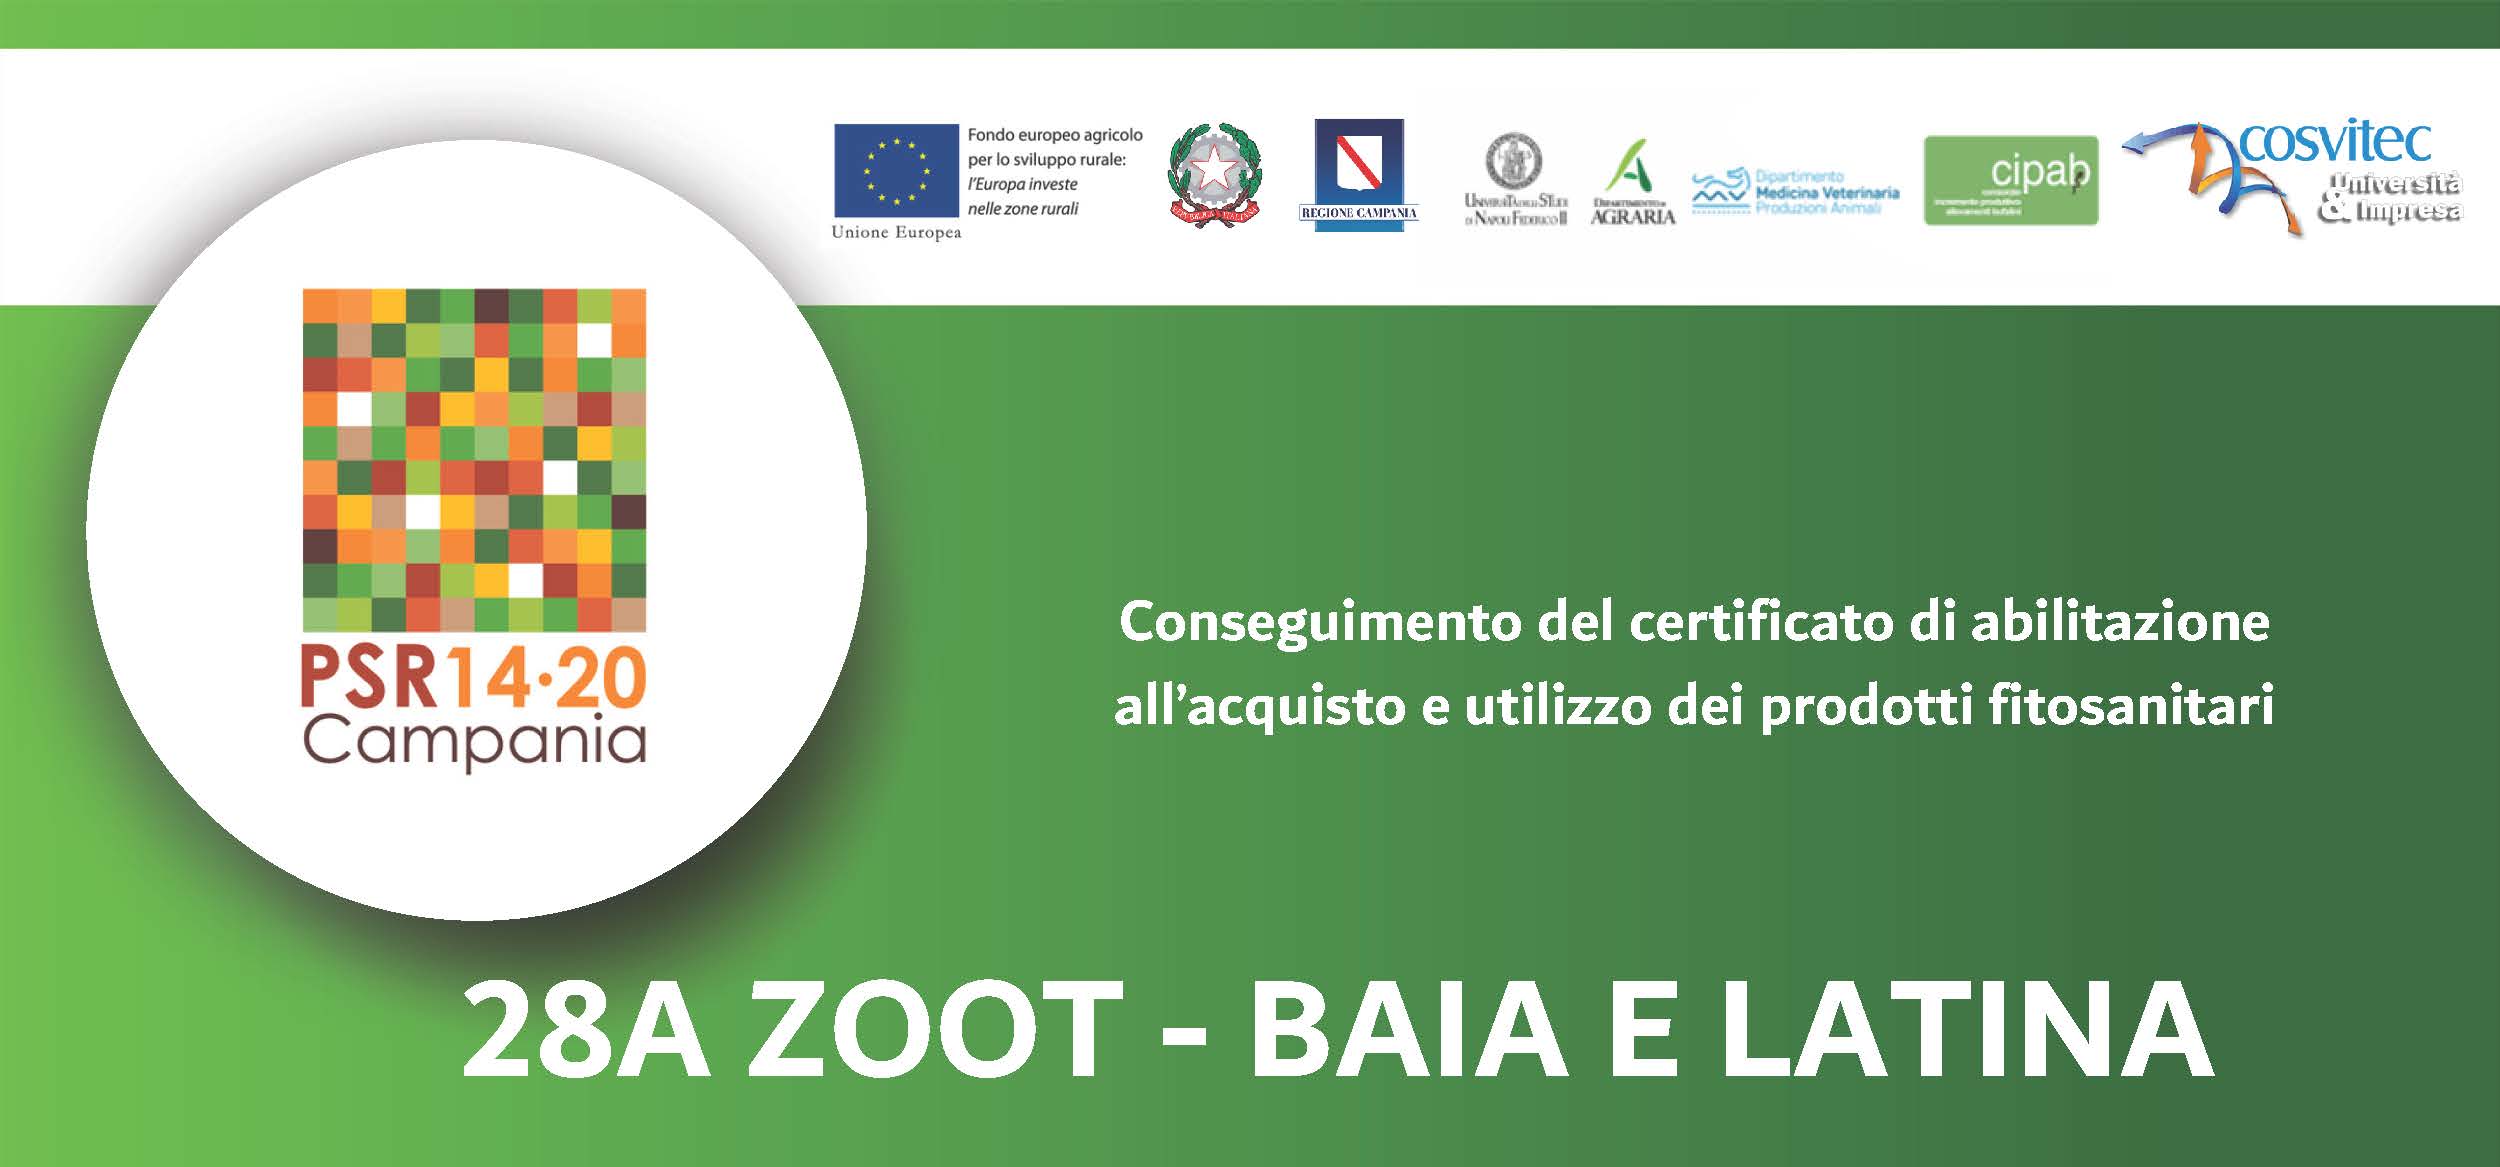 Conseguimento del certificato di abilitazione all’acquisto e utilizzo dei prodotti fitosanitari | 28A ZOOT – BAIA E LATINA